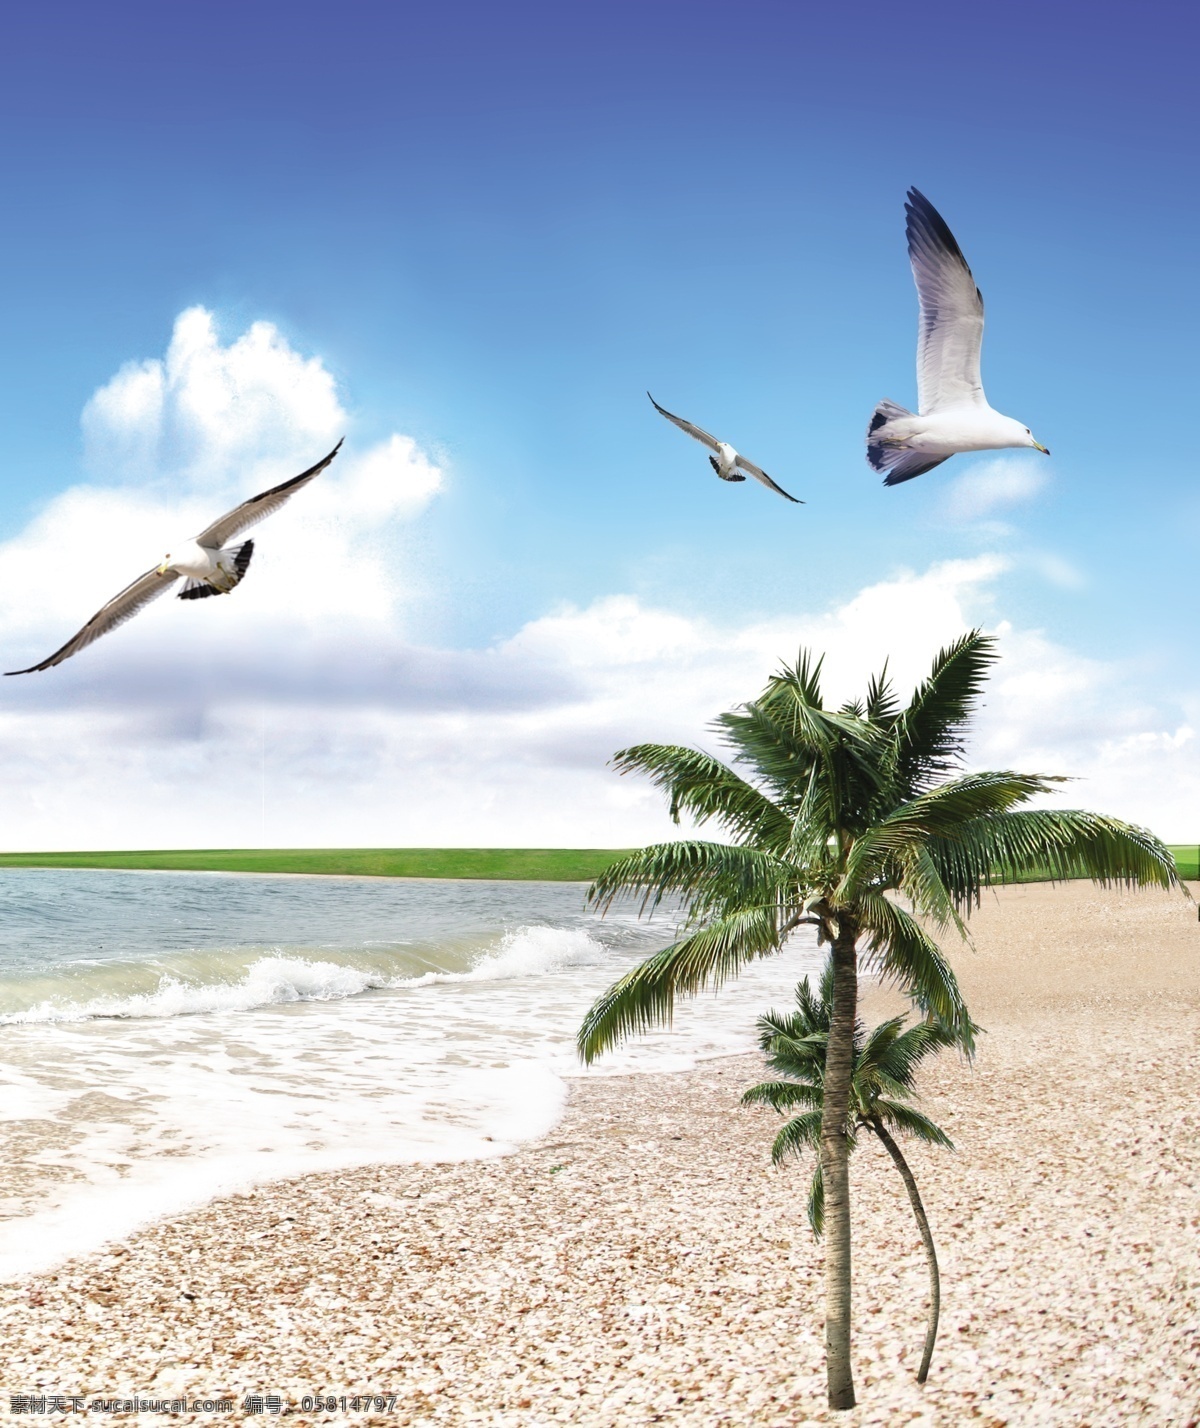 海鸥翱翔移门 海鸥翱翔 海鸥 大海 蓝天 沙滩 树 绿叶 白云 水 椰树 海天相接 鸟 白鸟 飞翔 海水 移门图案 广告设计模板 源文件